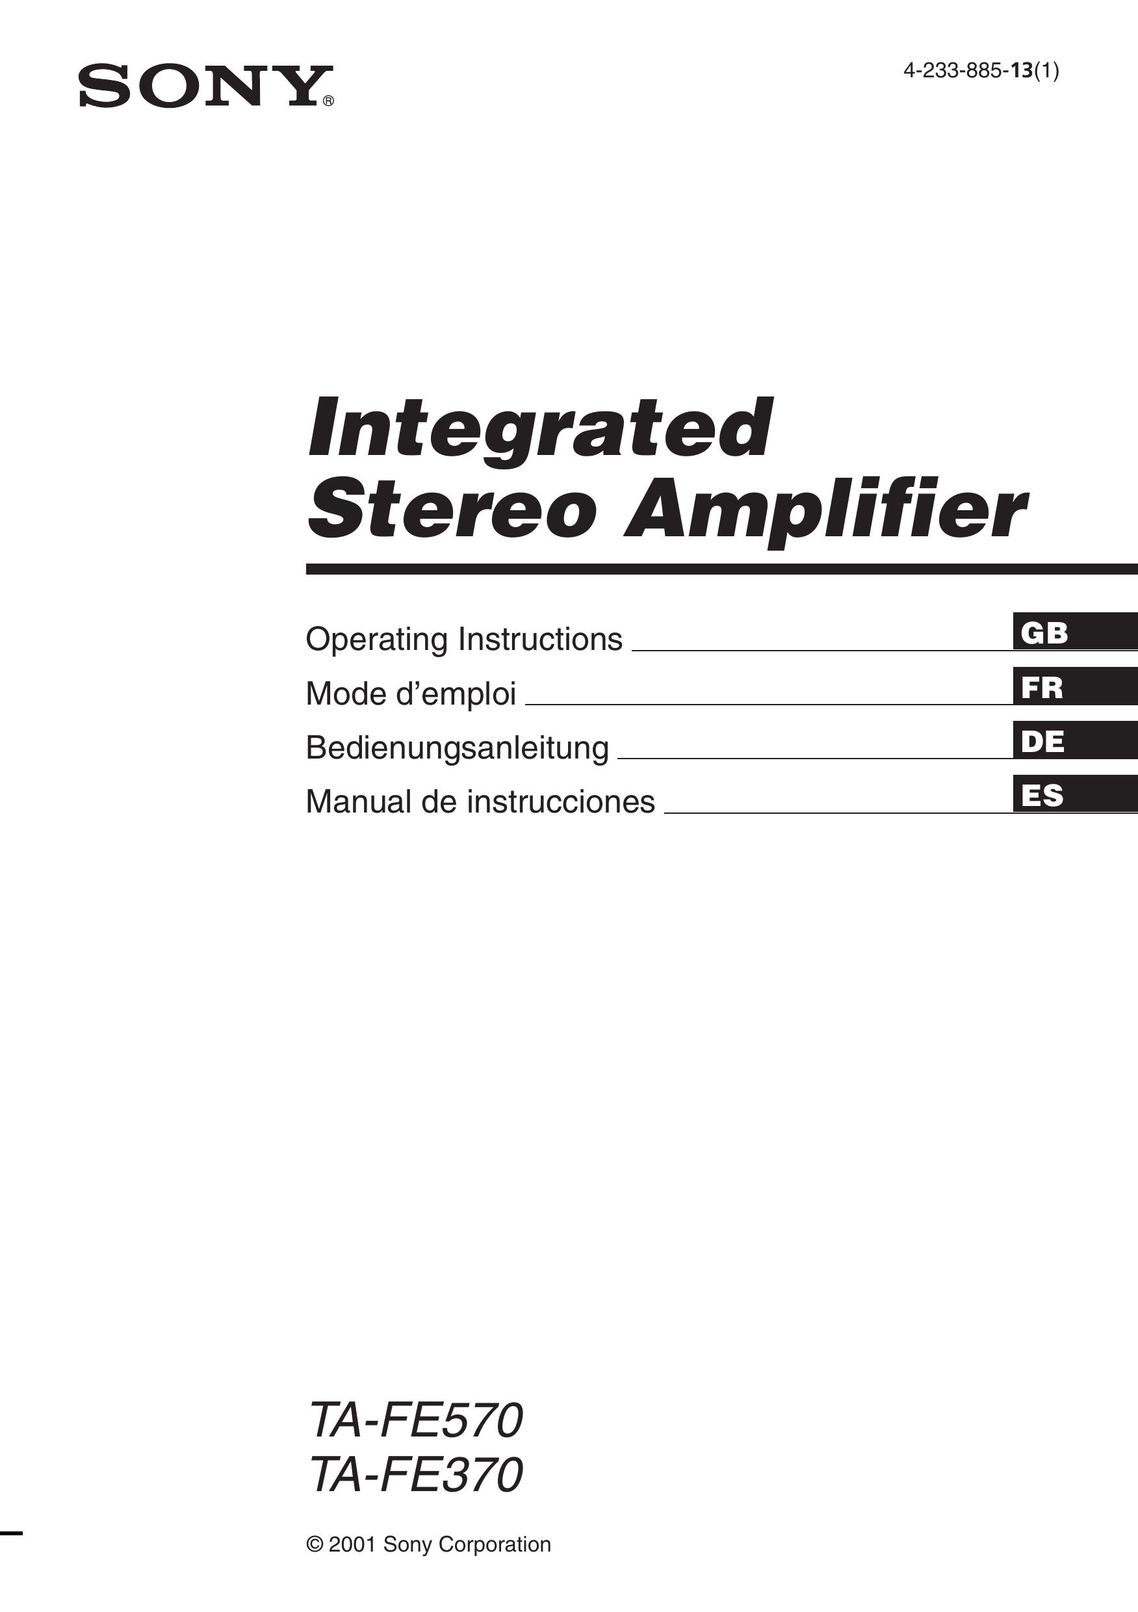 Sony TA-FE570 Stereo Amplifier User Manual